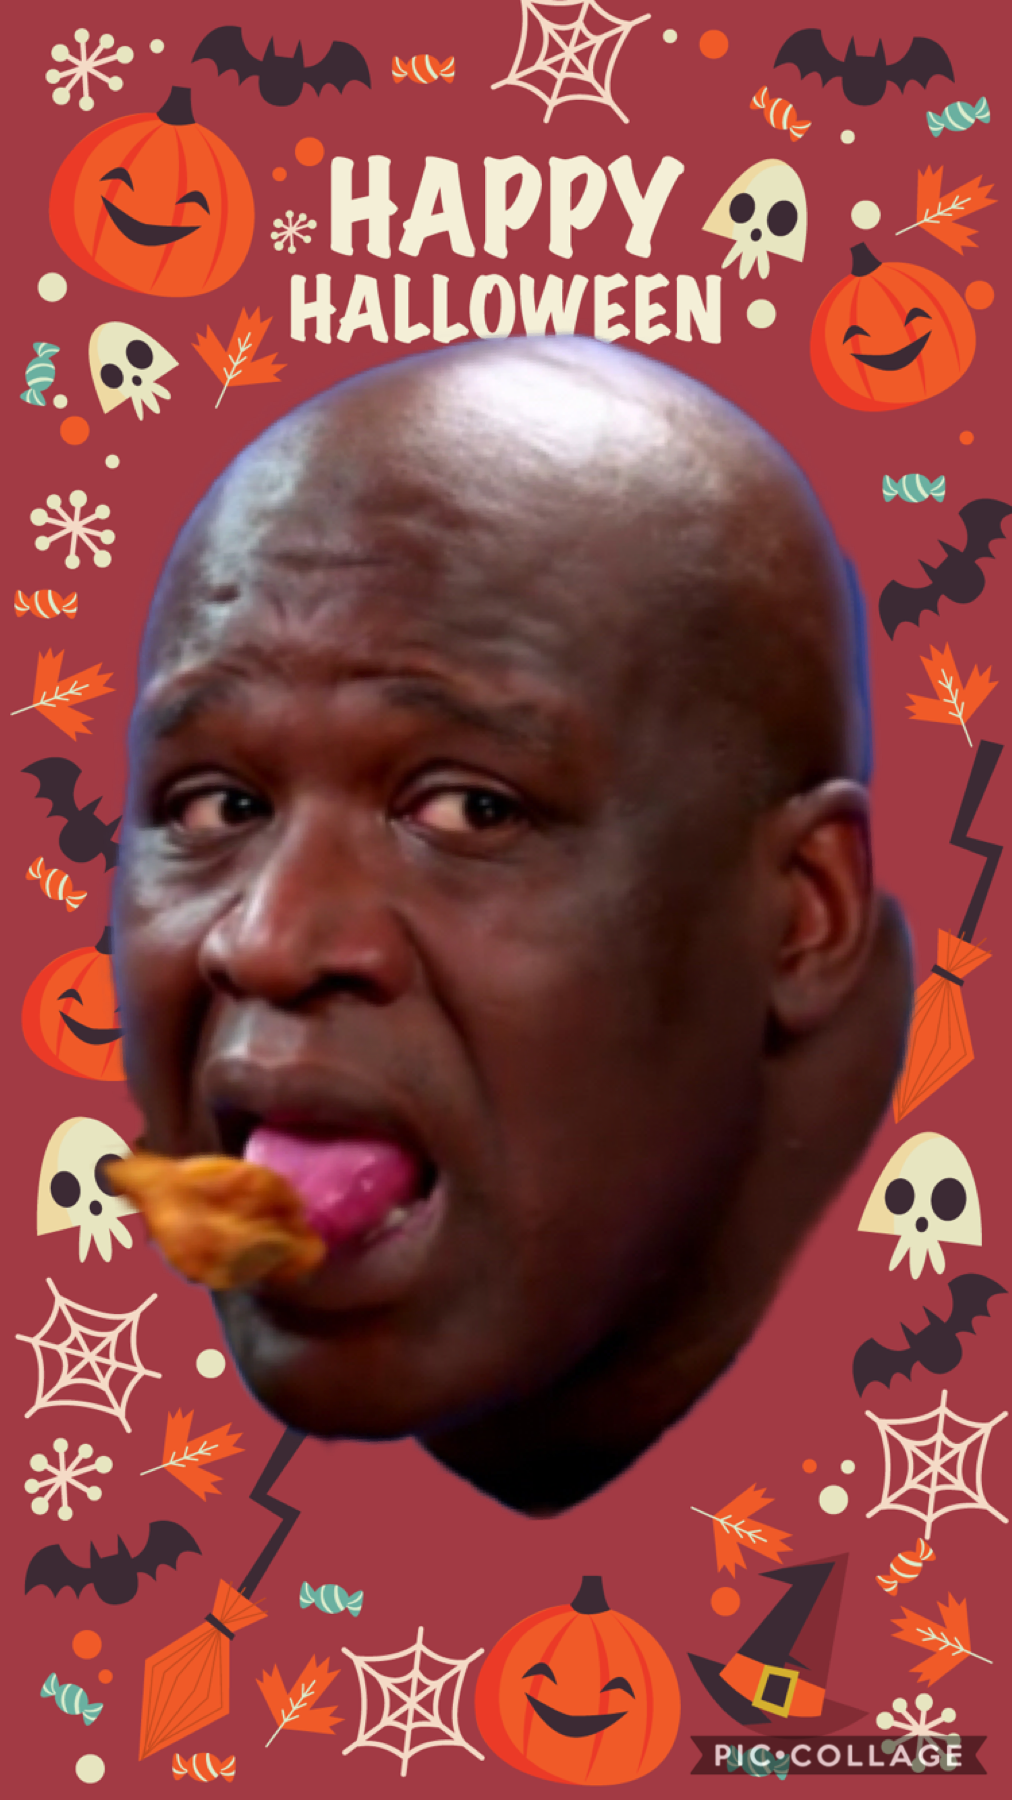 It’s spooky month